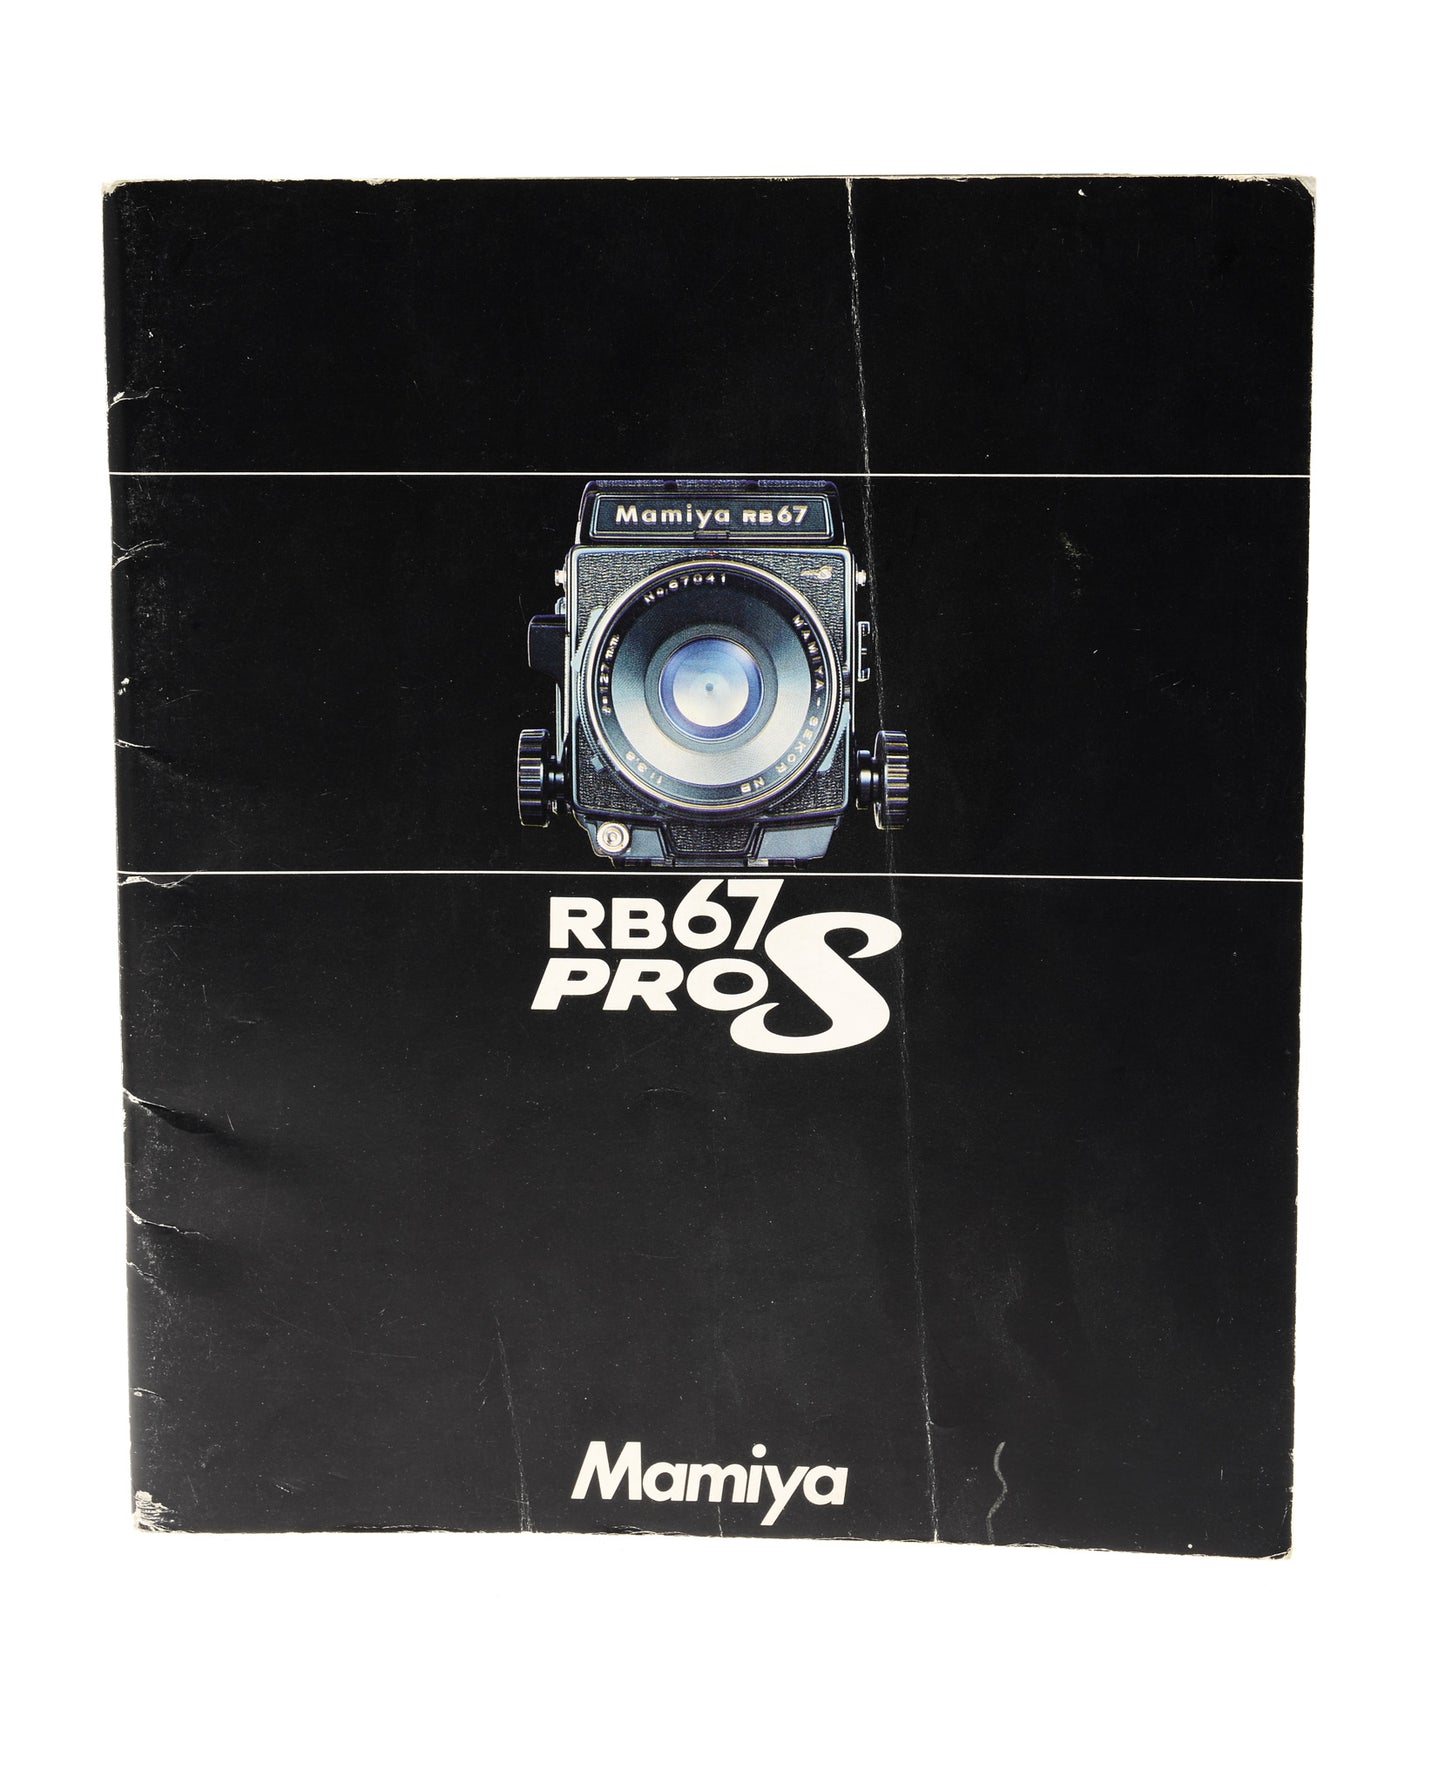 Mamiya RB67 Pro S Booklet